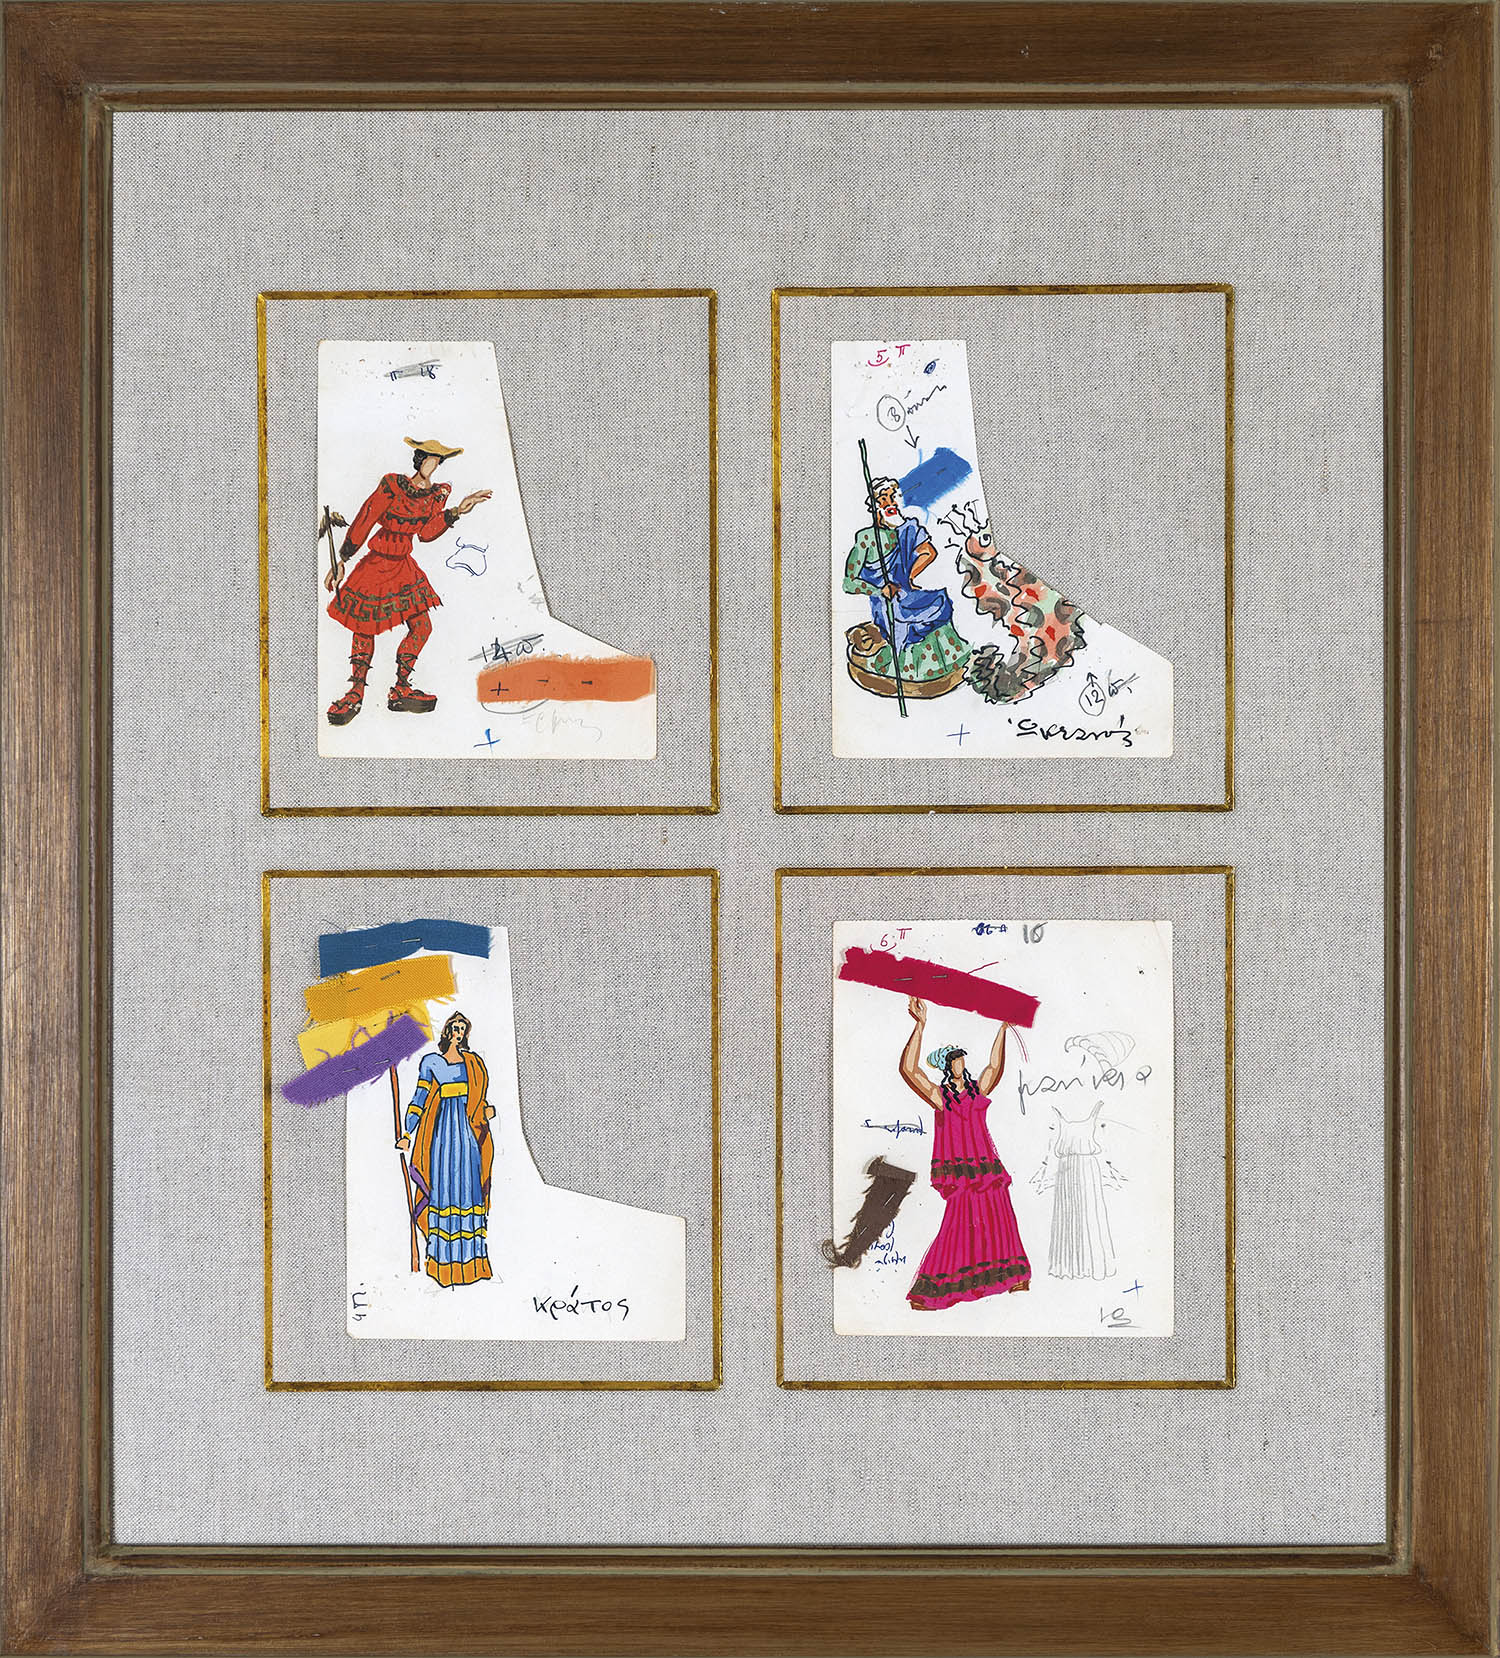 Μακέτες κοστουμιών για την παράσταση του Αισχύλου Προμηθέας Δεσμώτης (Θυμελικός Θίασος του Λίνου Καρζή, 1959)